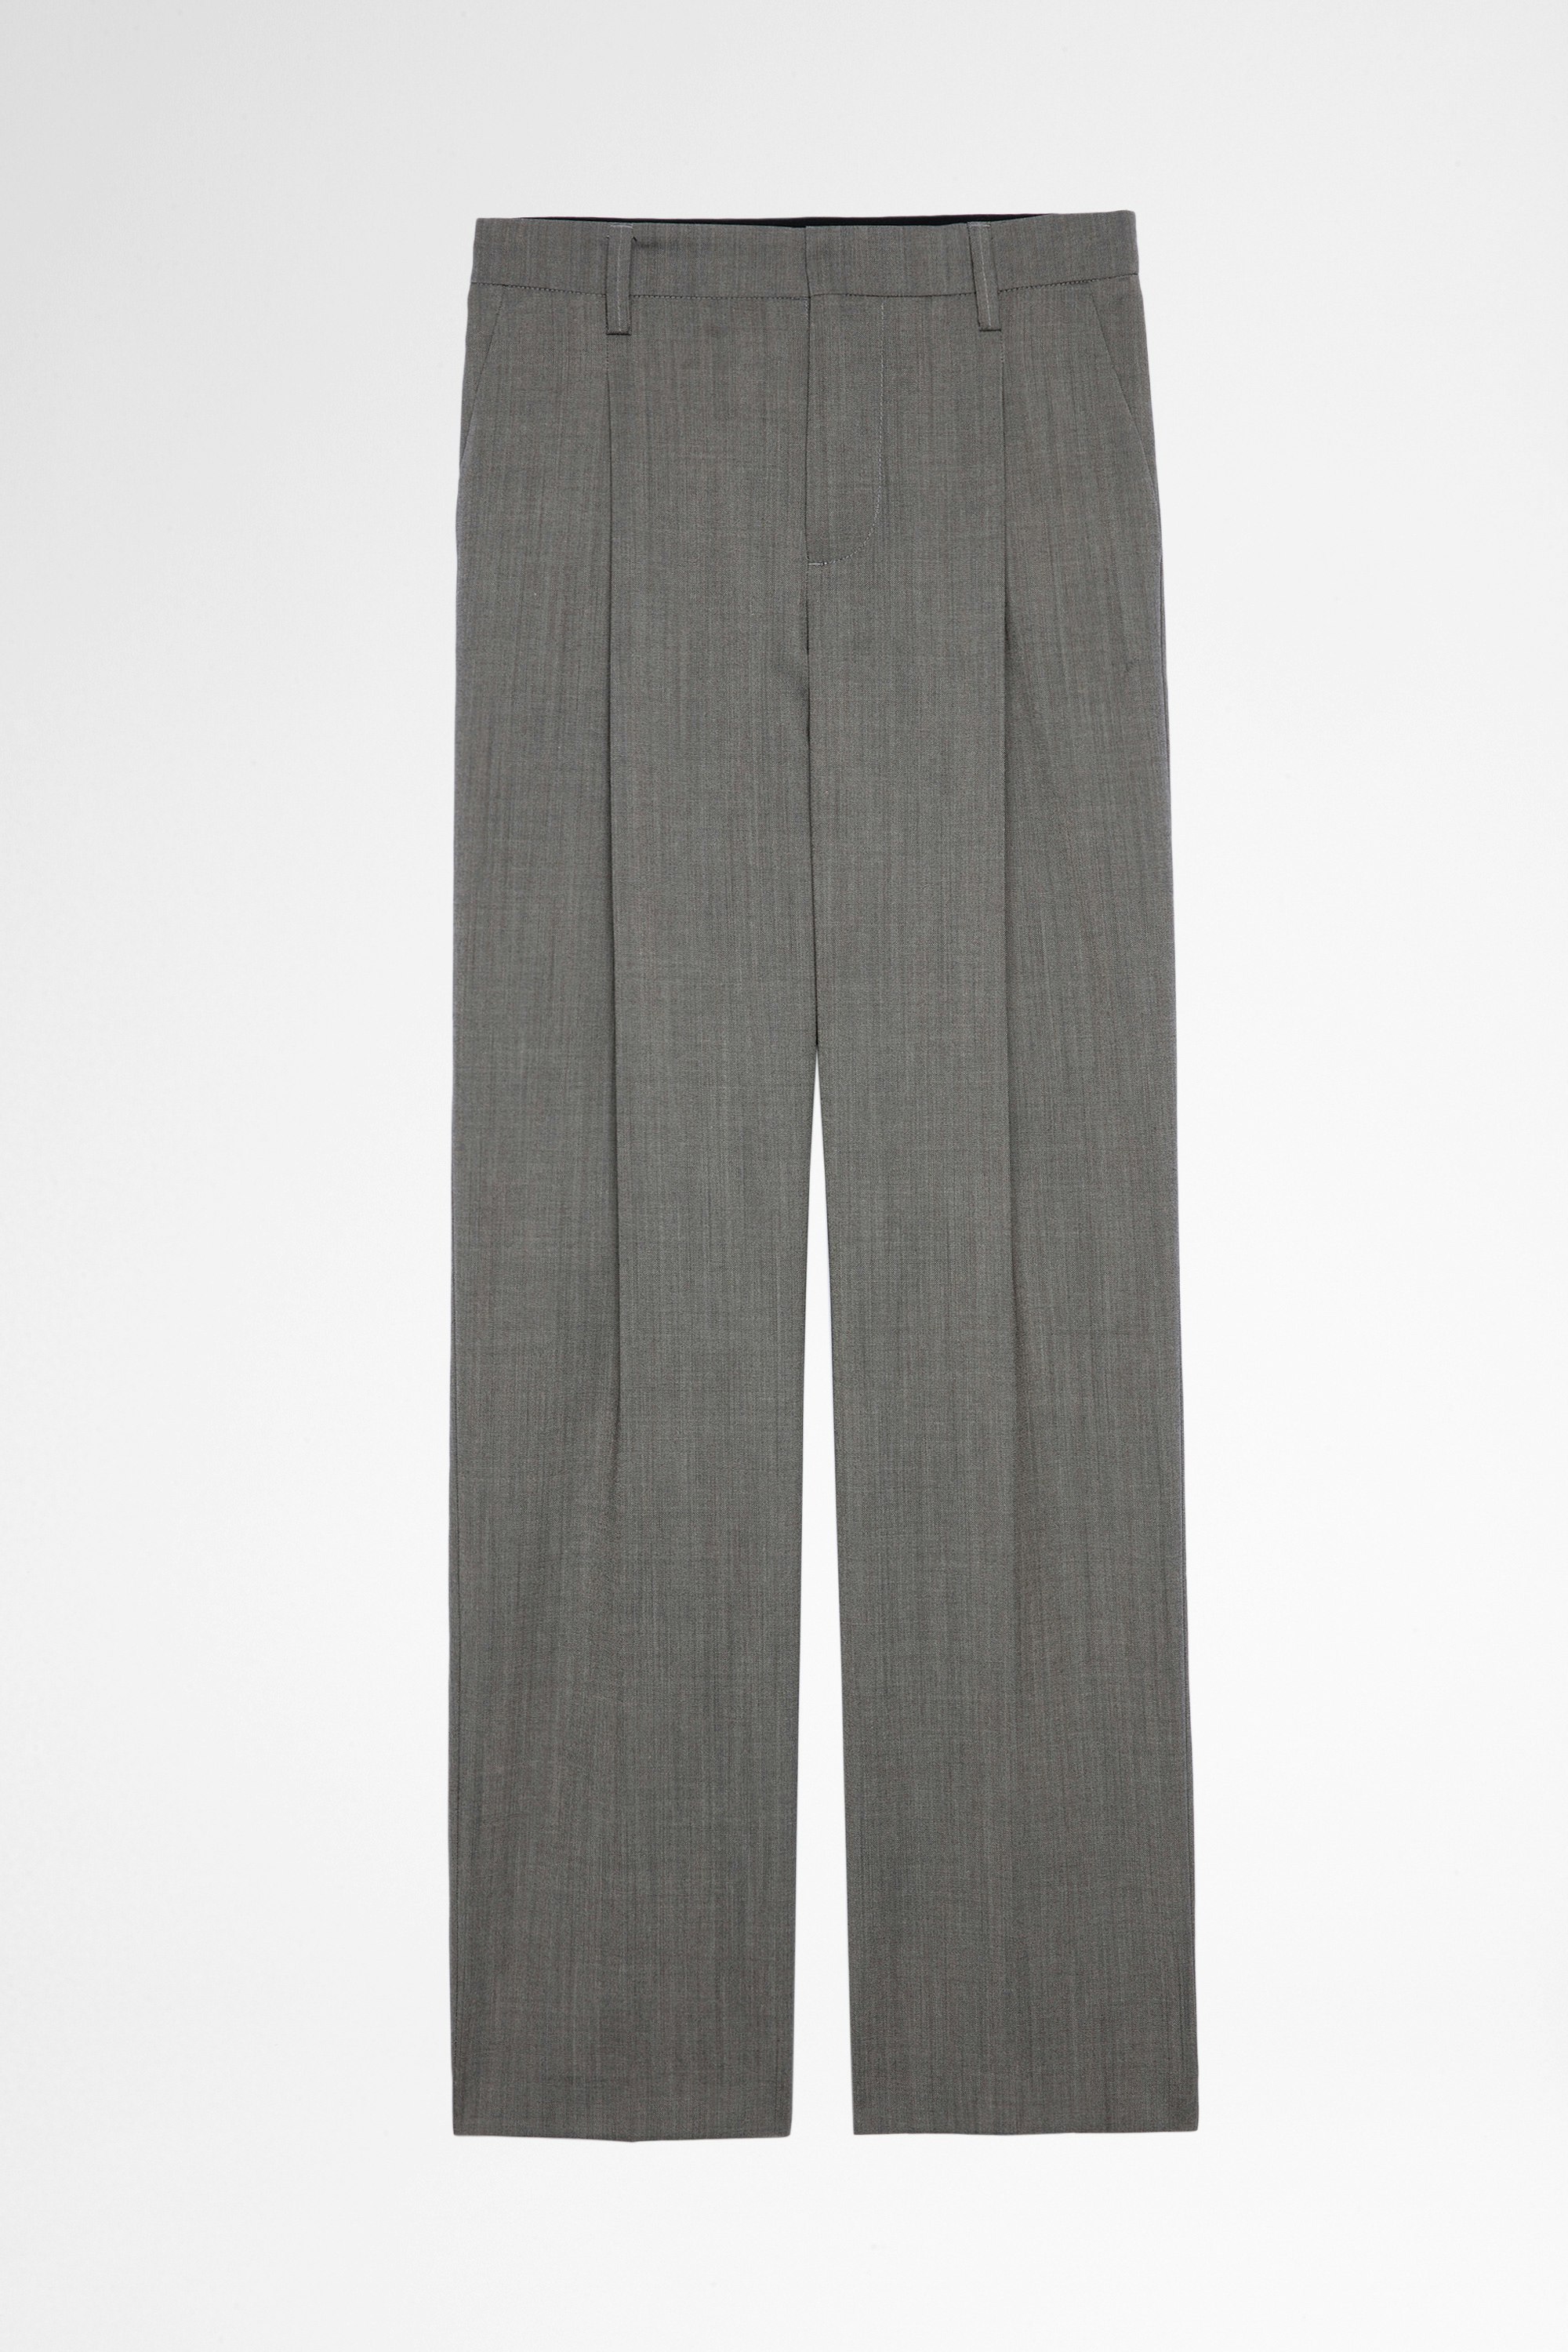 Pantaloni Gitane Pantaloni grigi in lana, donna. Reallizzato con fibre da agricoltura biologica